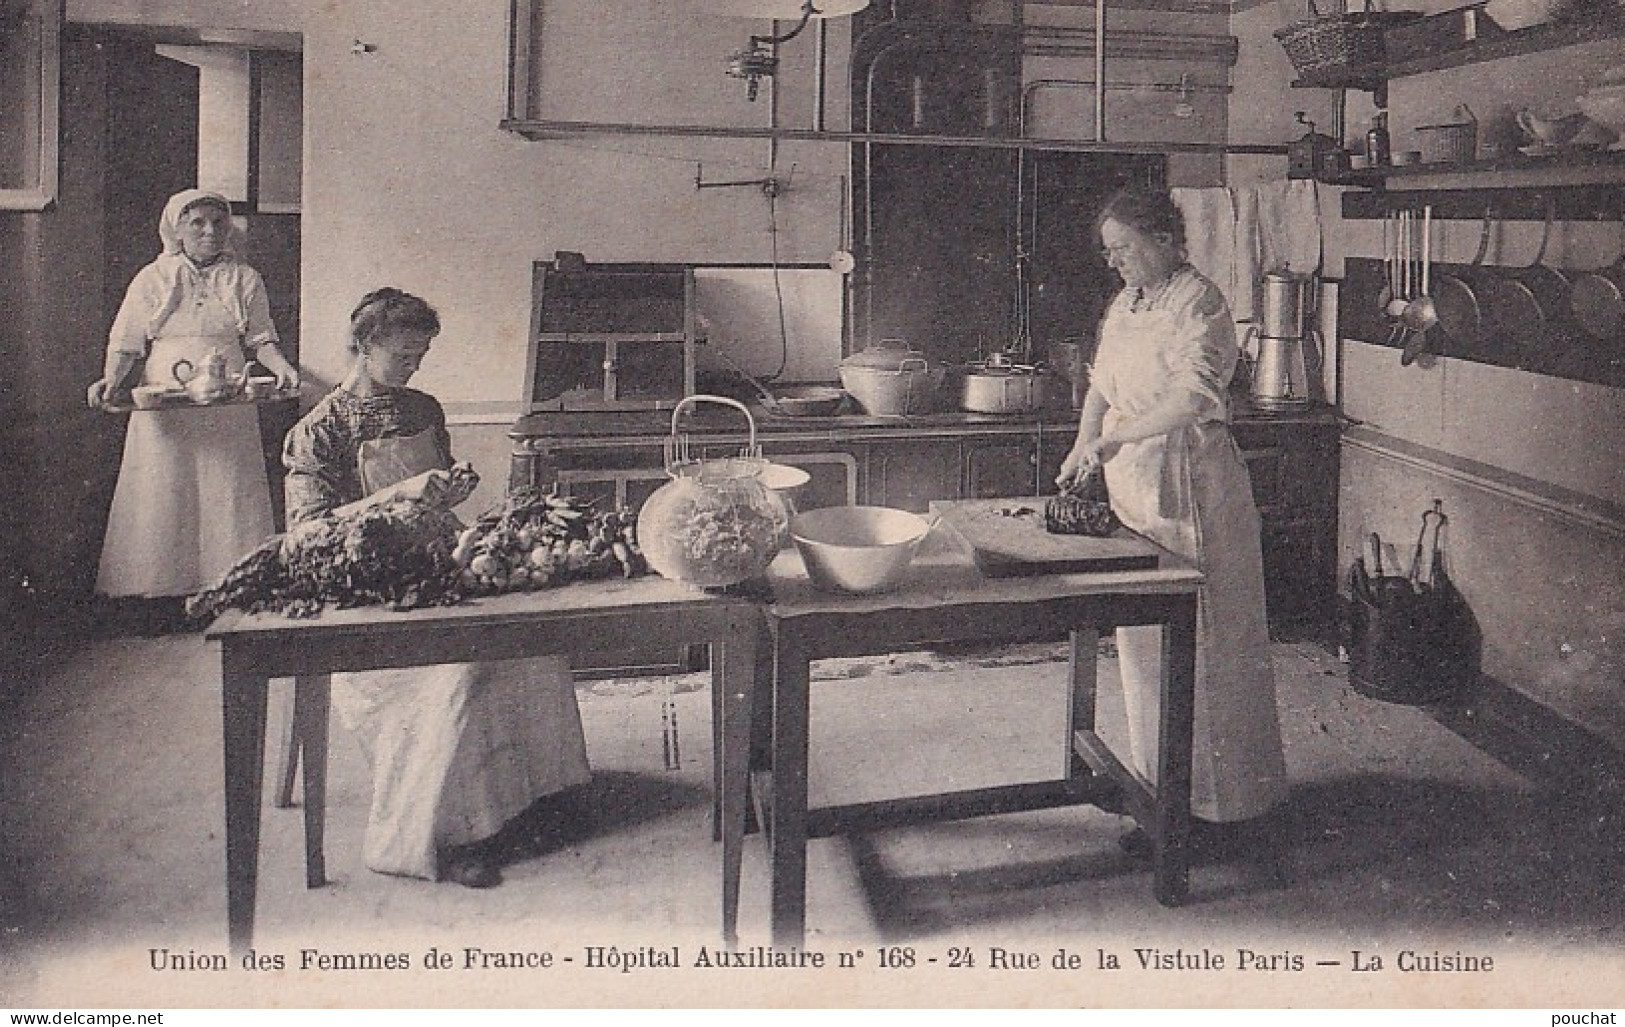 PARIS (XIII°) UNION DES FEMMES DE FRANCE - HOPITAL AUXILIAIRE N° 168 - 24 RUE DE LA VISTULE - LA CUISINE - ( 2 SCANS ) - Santé, Hôpitaux